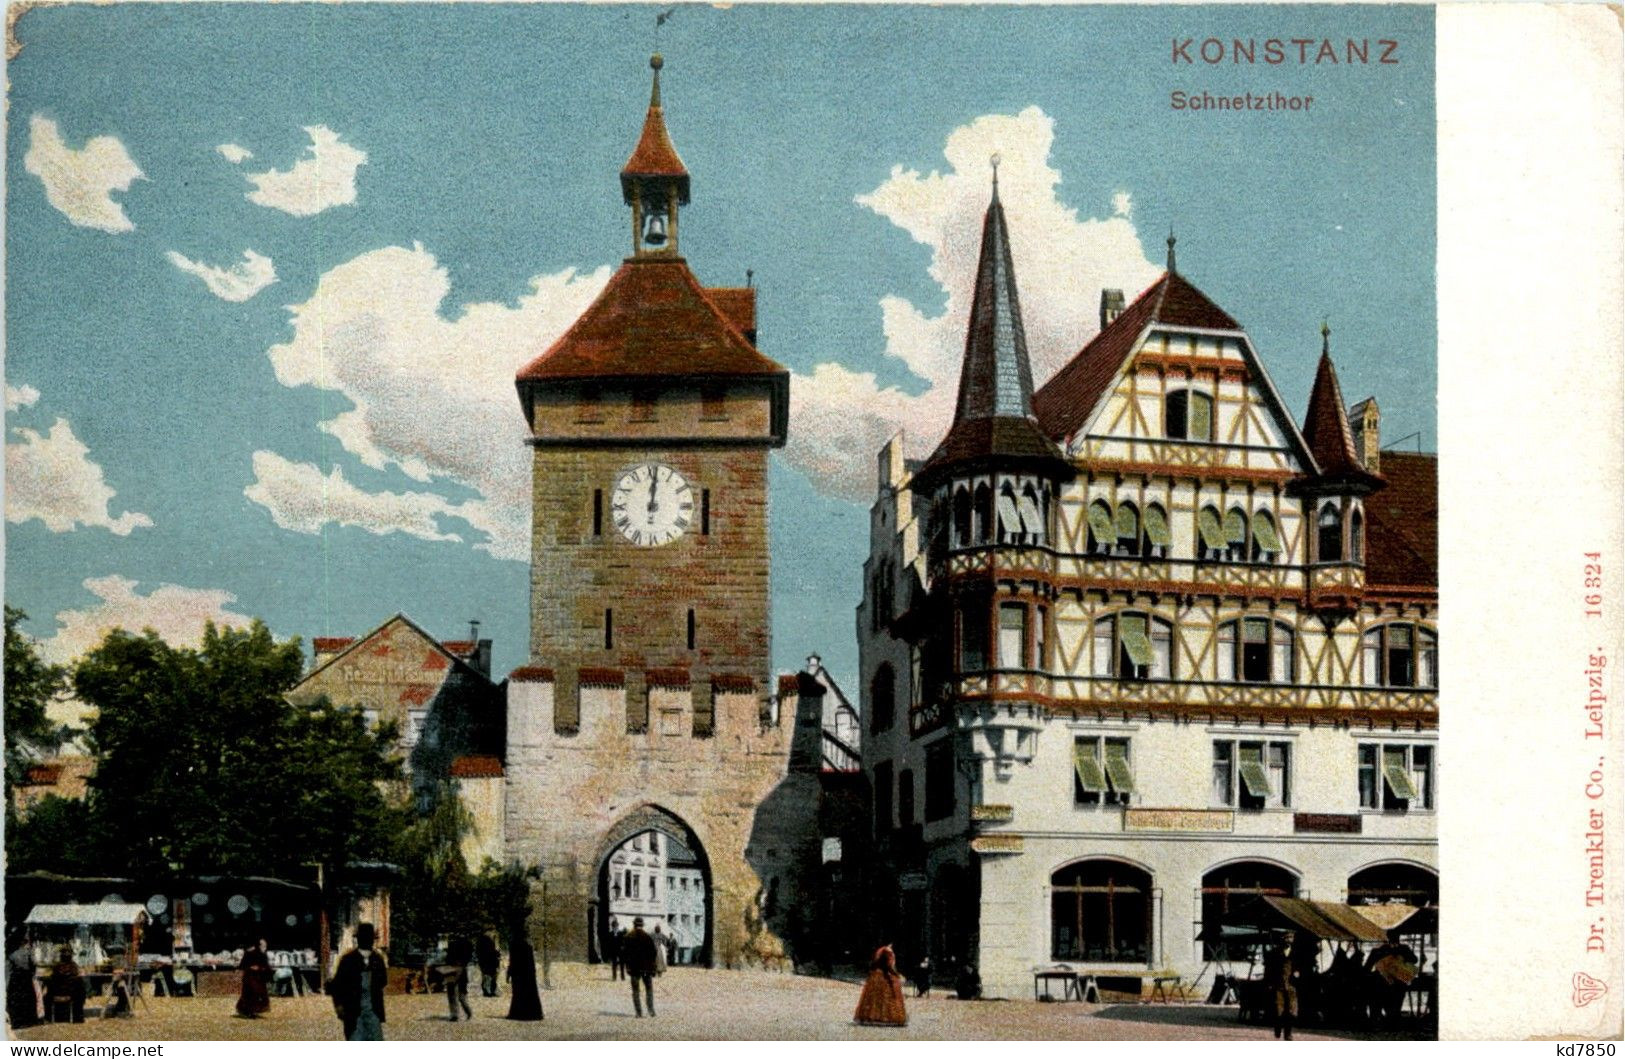 Konstanz - Schnetzlthor - Konstanz